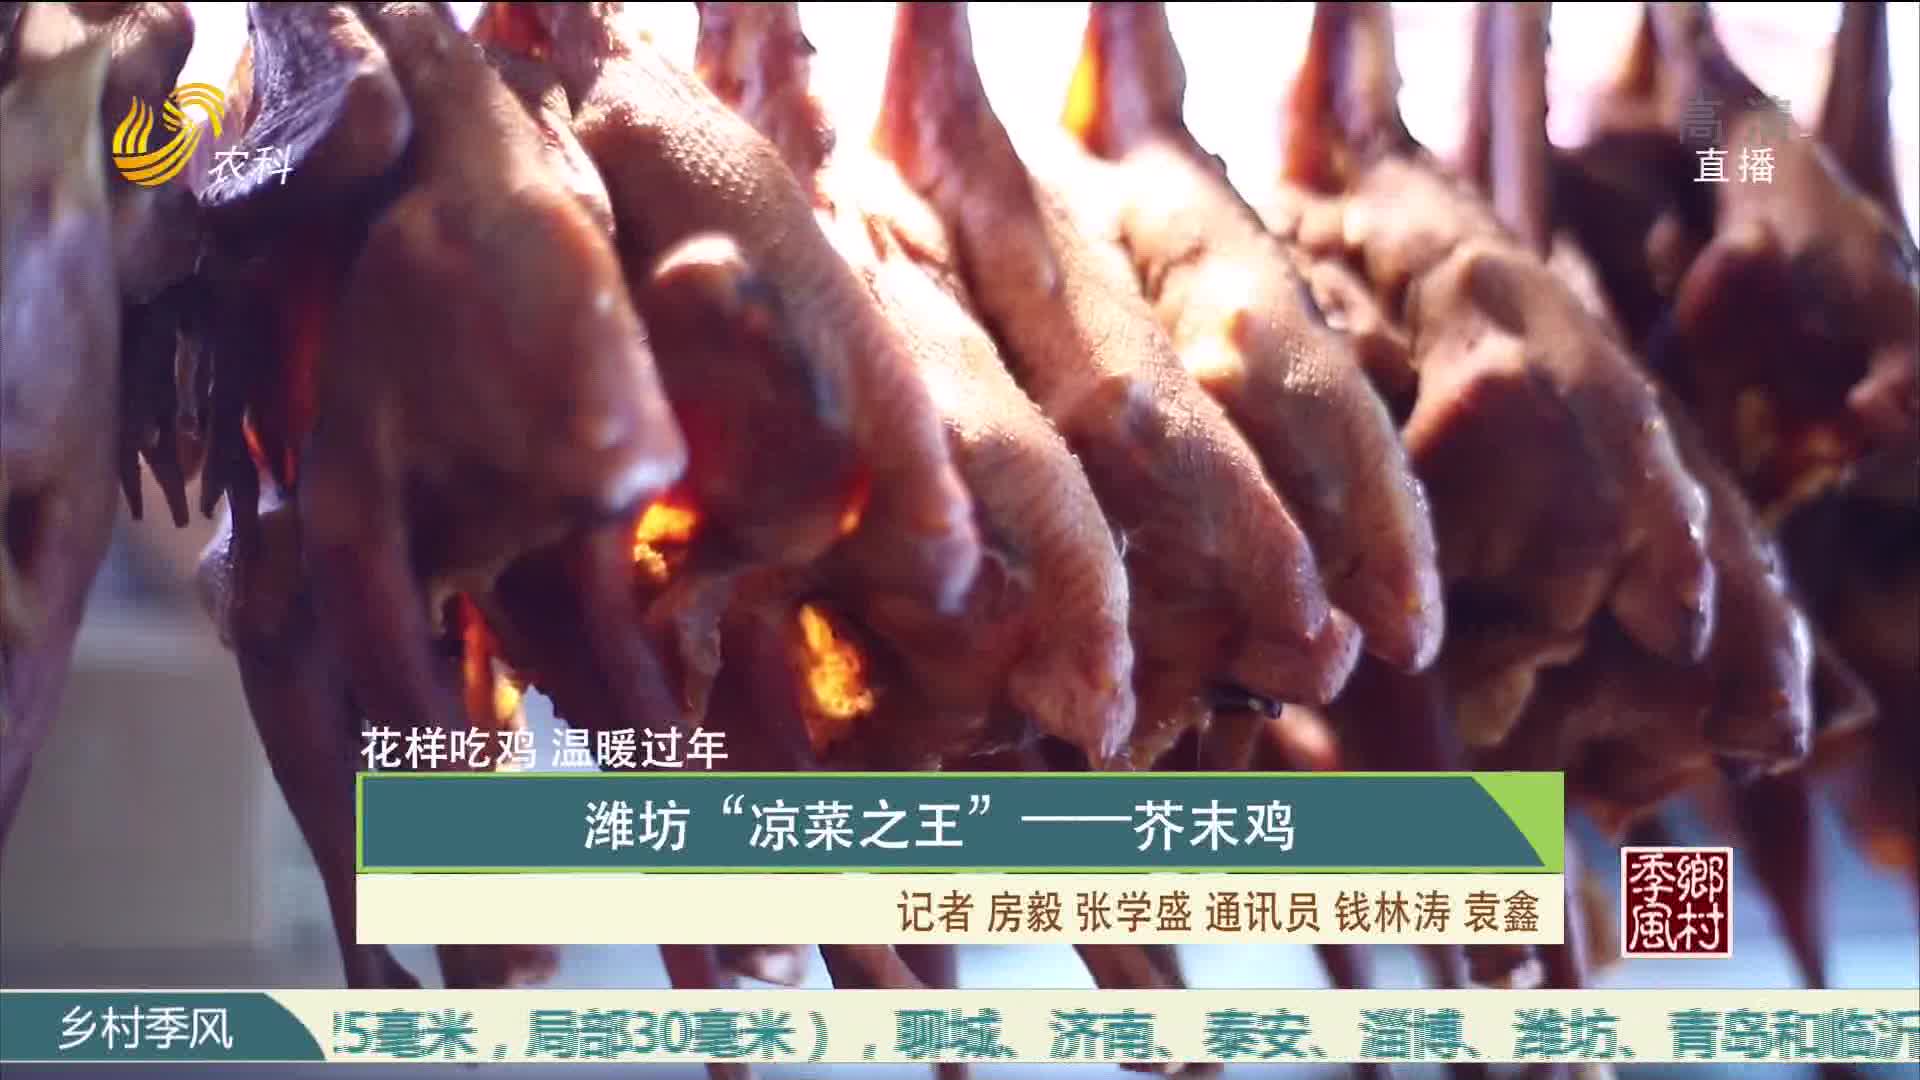 【花样吃鸡 温暖过年】潍坊“凉菜之王”——芥末鸡